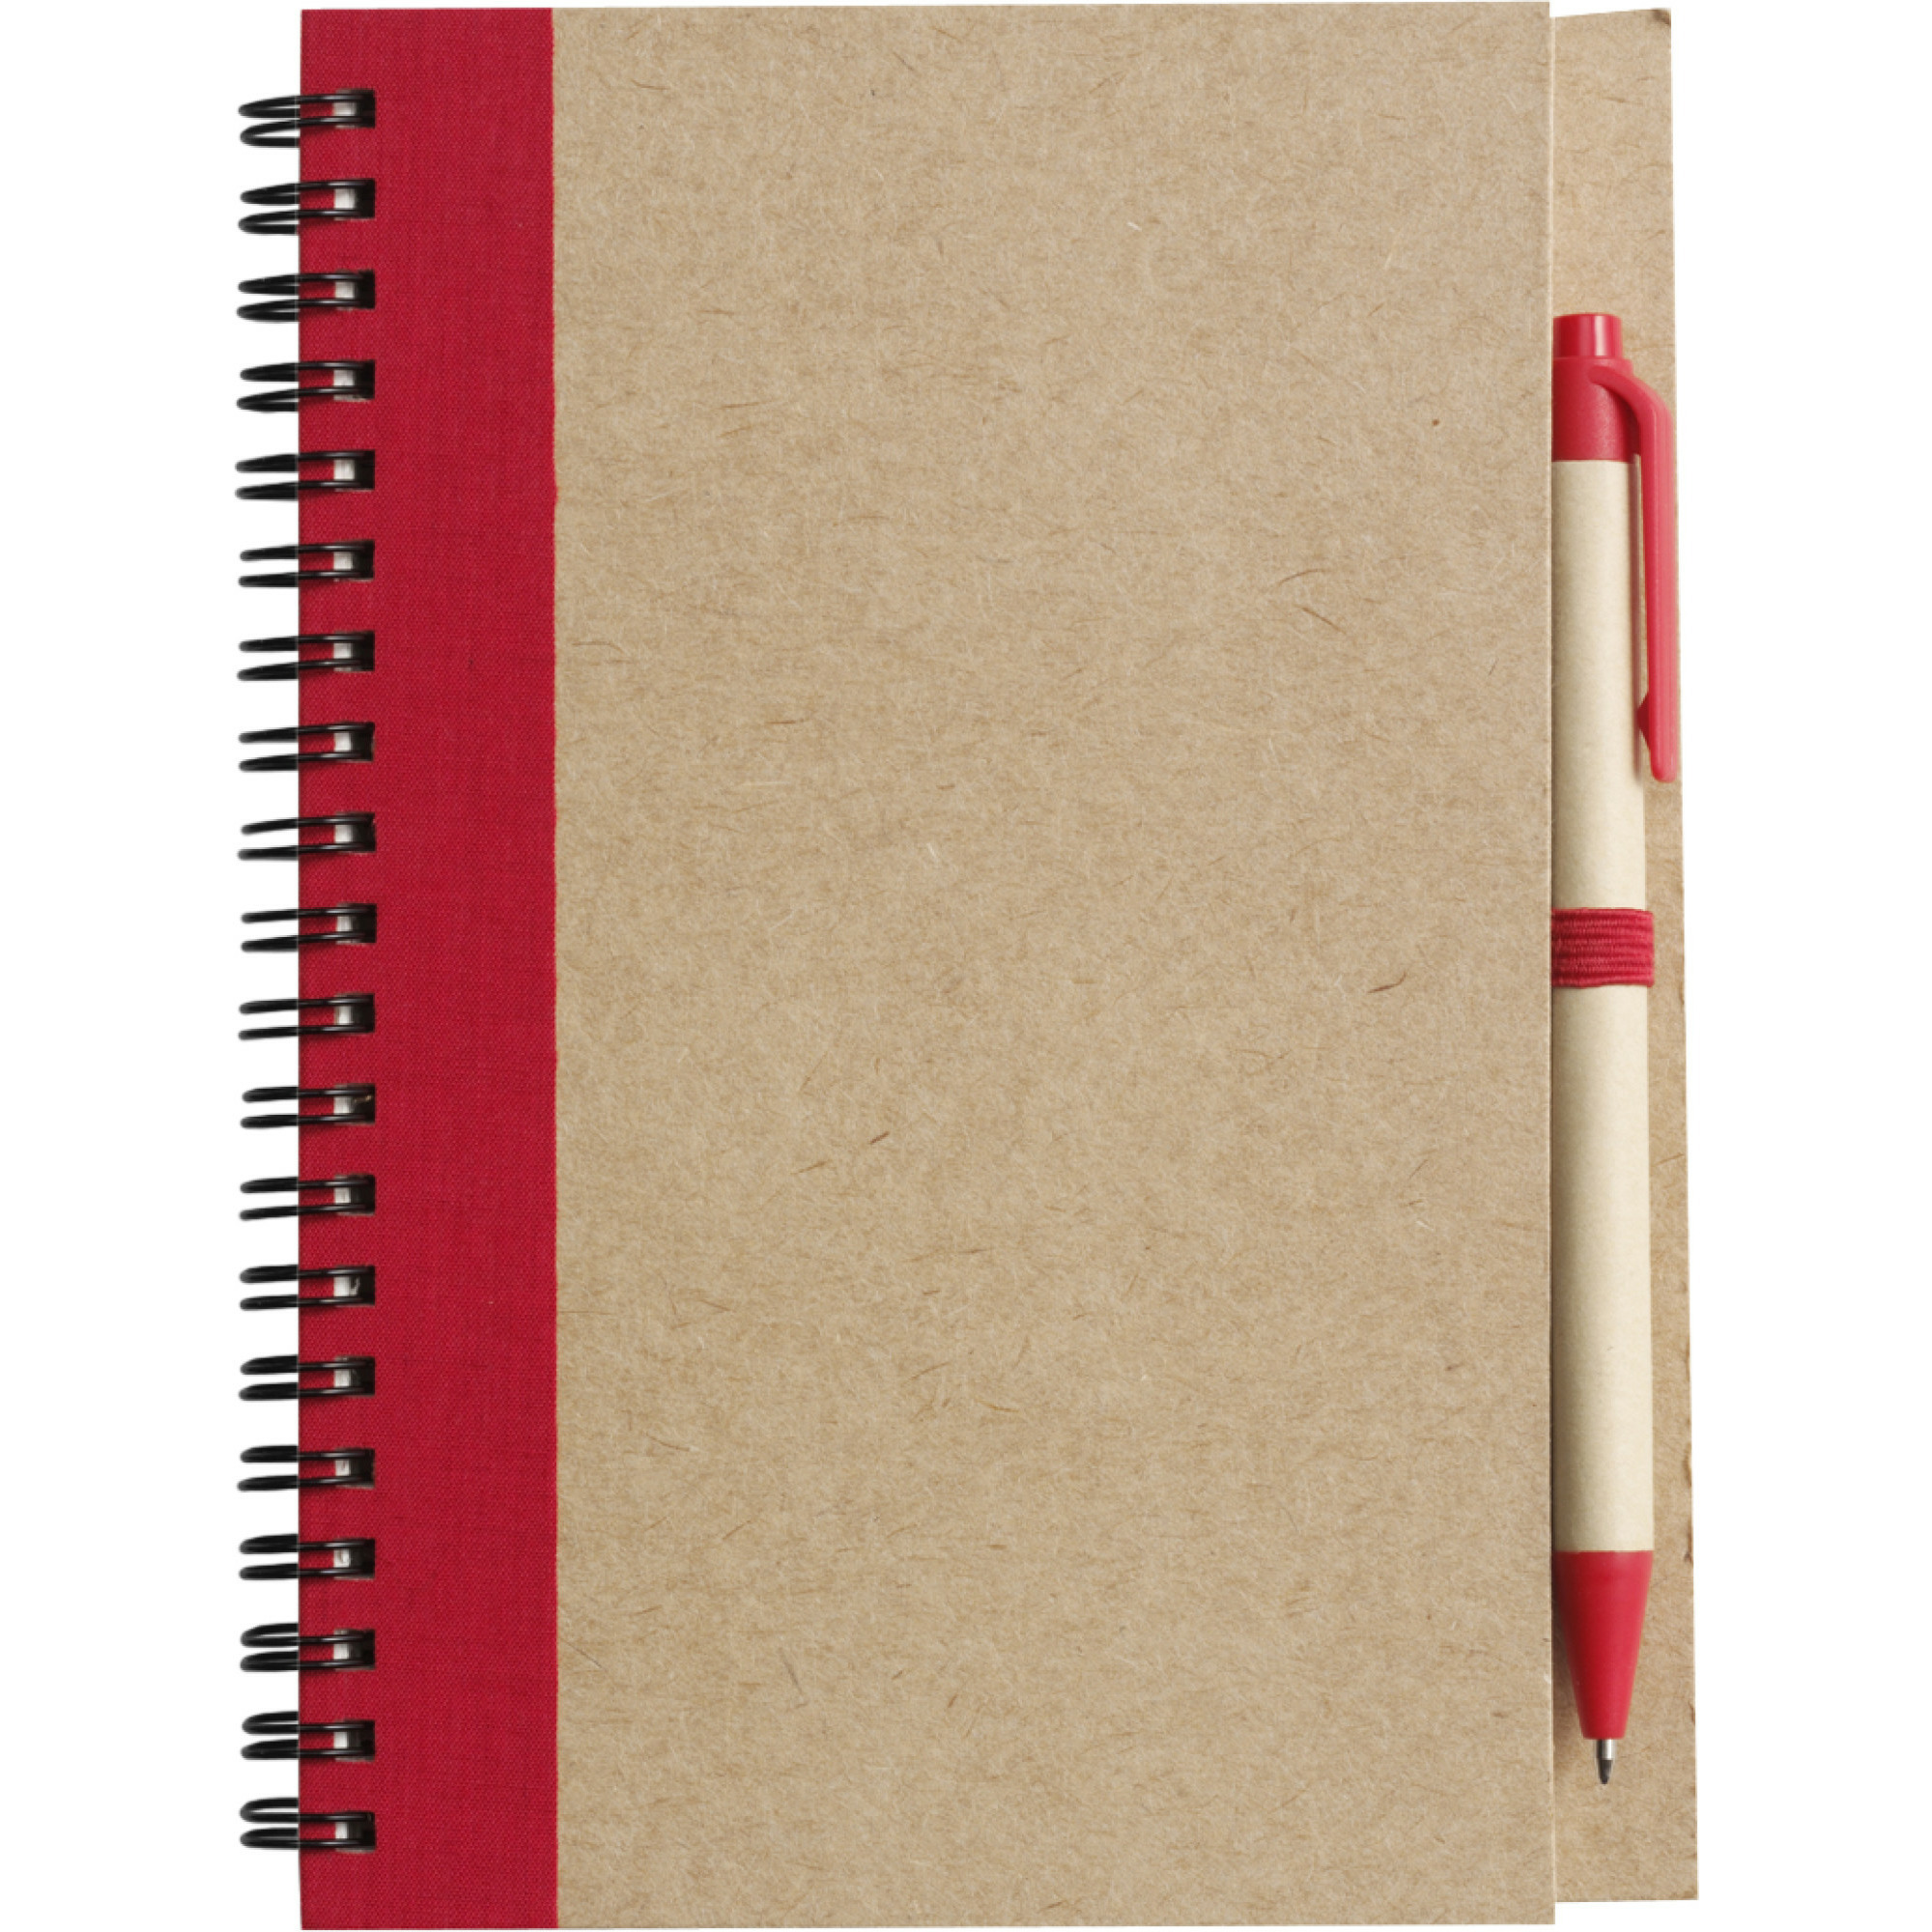 Notitie-opschrijf boekje met balpen harde kaft beige-rood 18x13cm 60blz gelinieerd